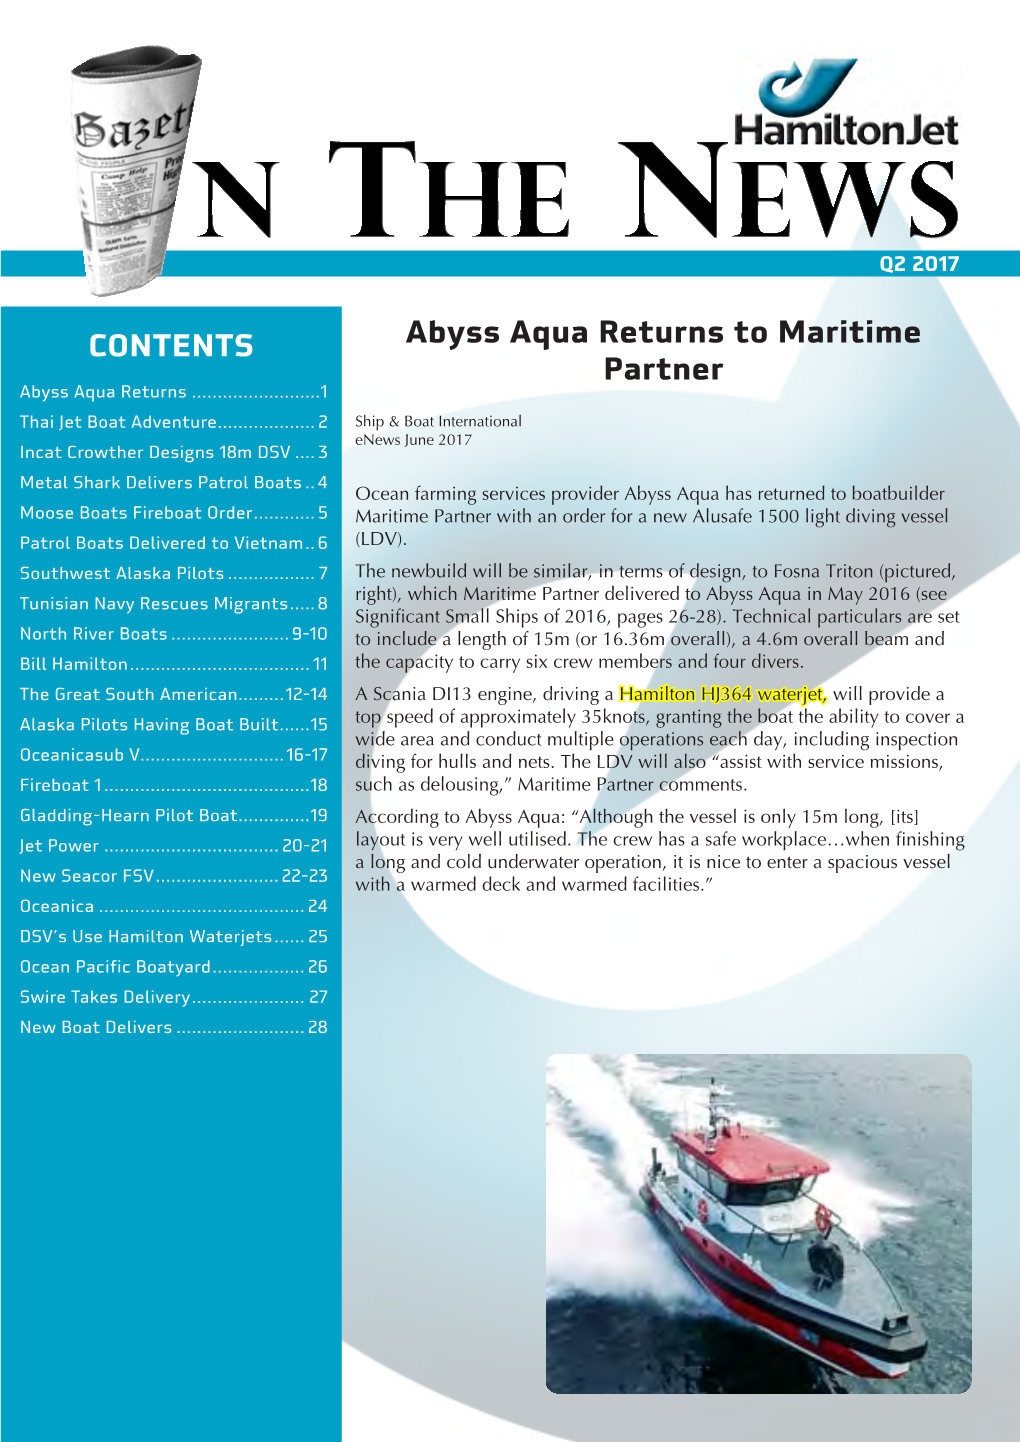 Abyss Aqua Returns to Maritime Partner CONTENTS